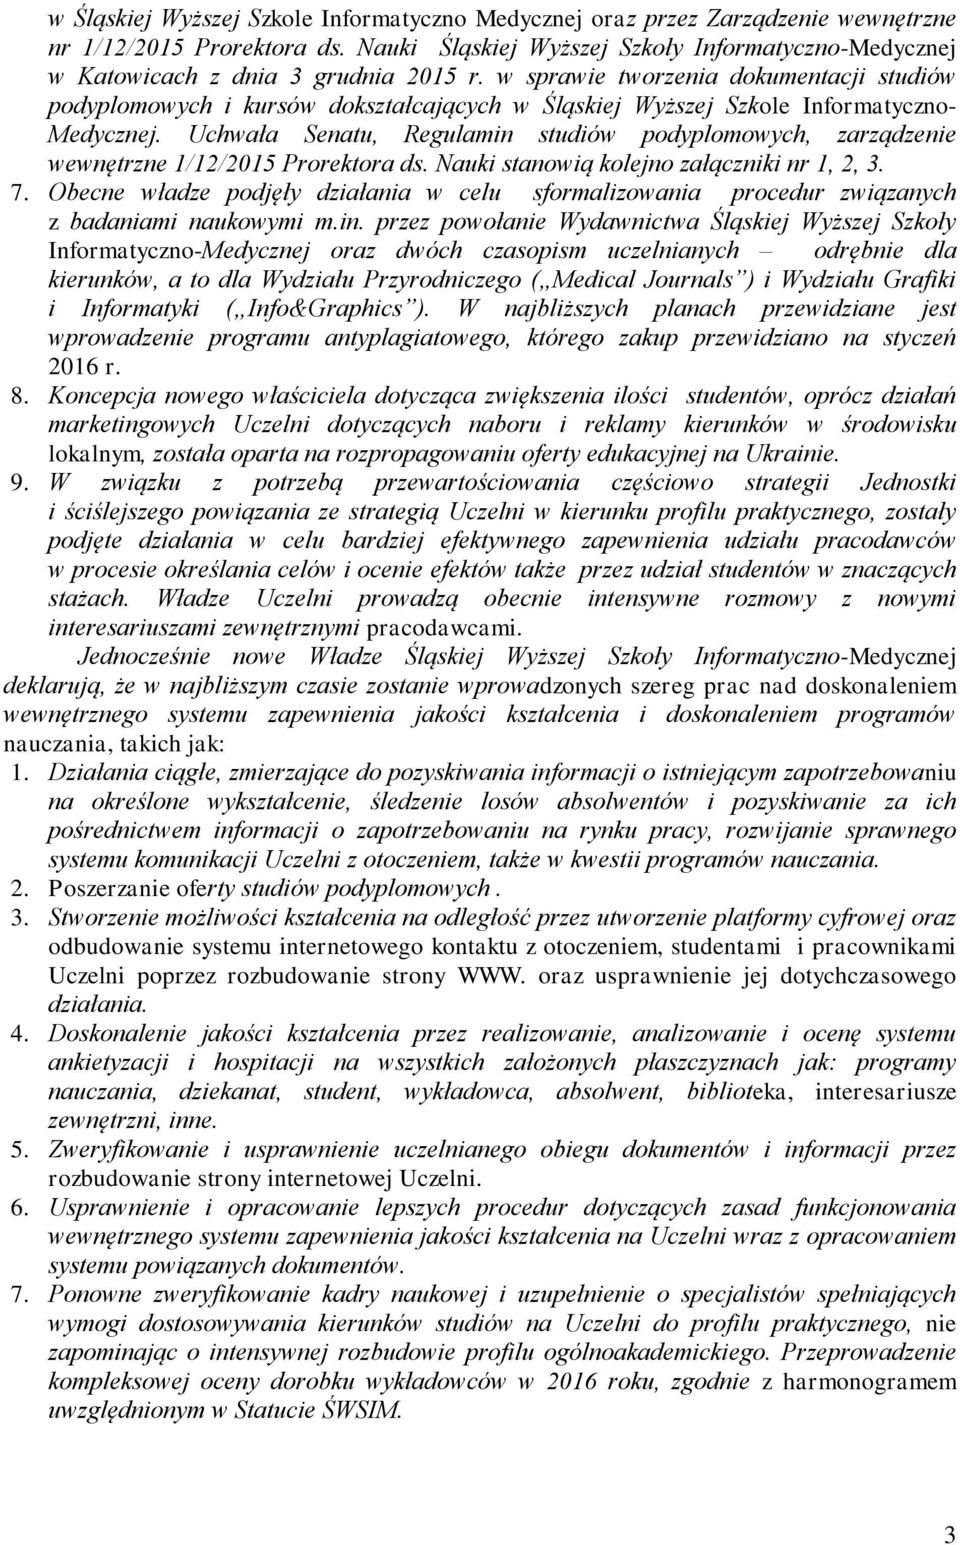 w sprawie tworzenia dokumentacji studiów podyplomowych i kursów dokształcających w Śląskiej Wyższej Szkole Informatyczno- Medycznej.